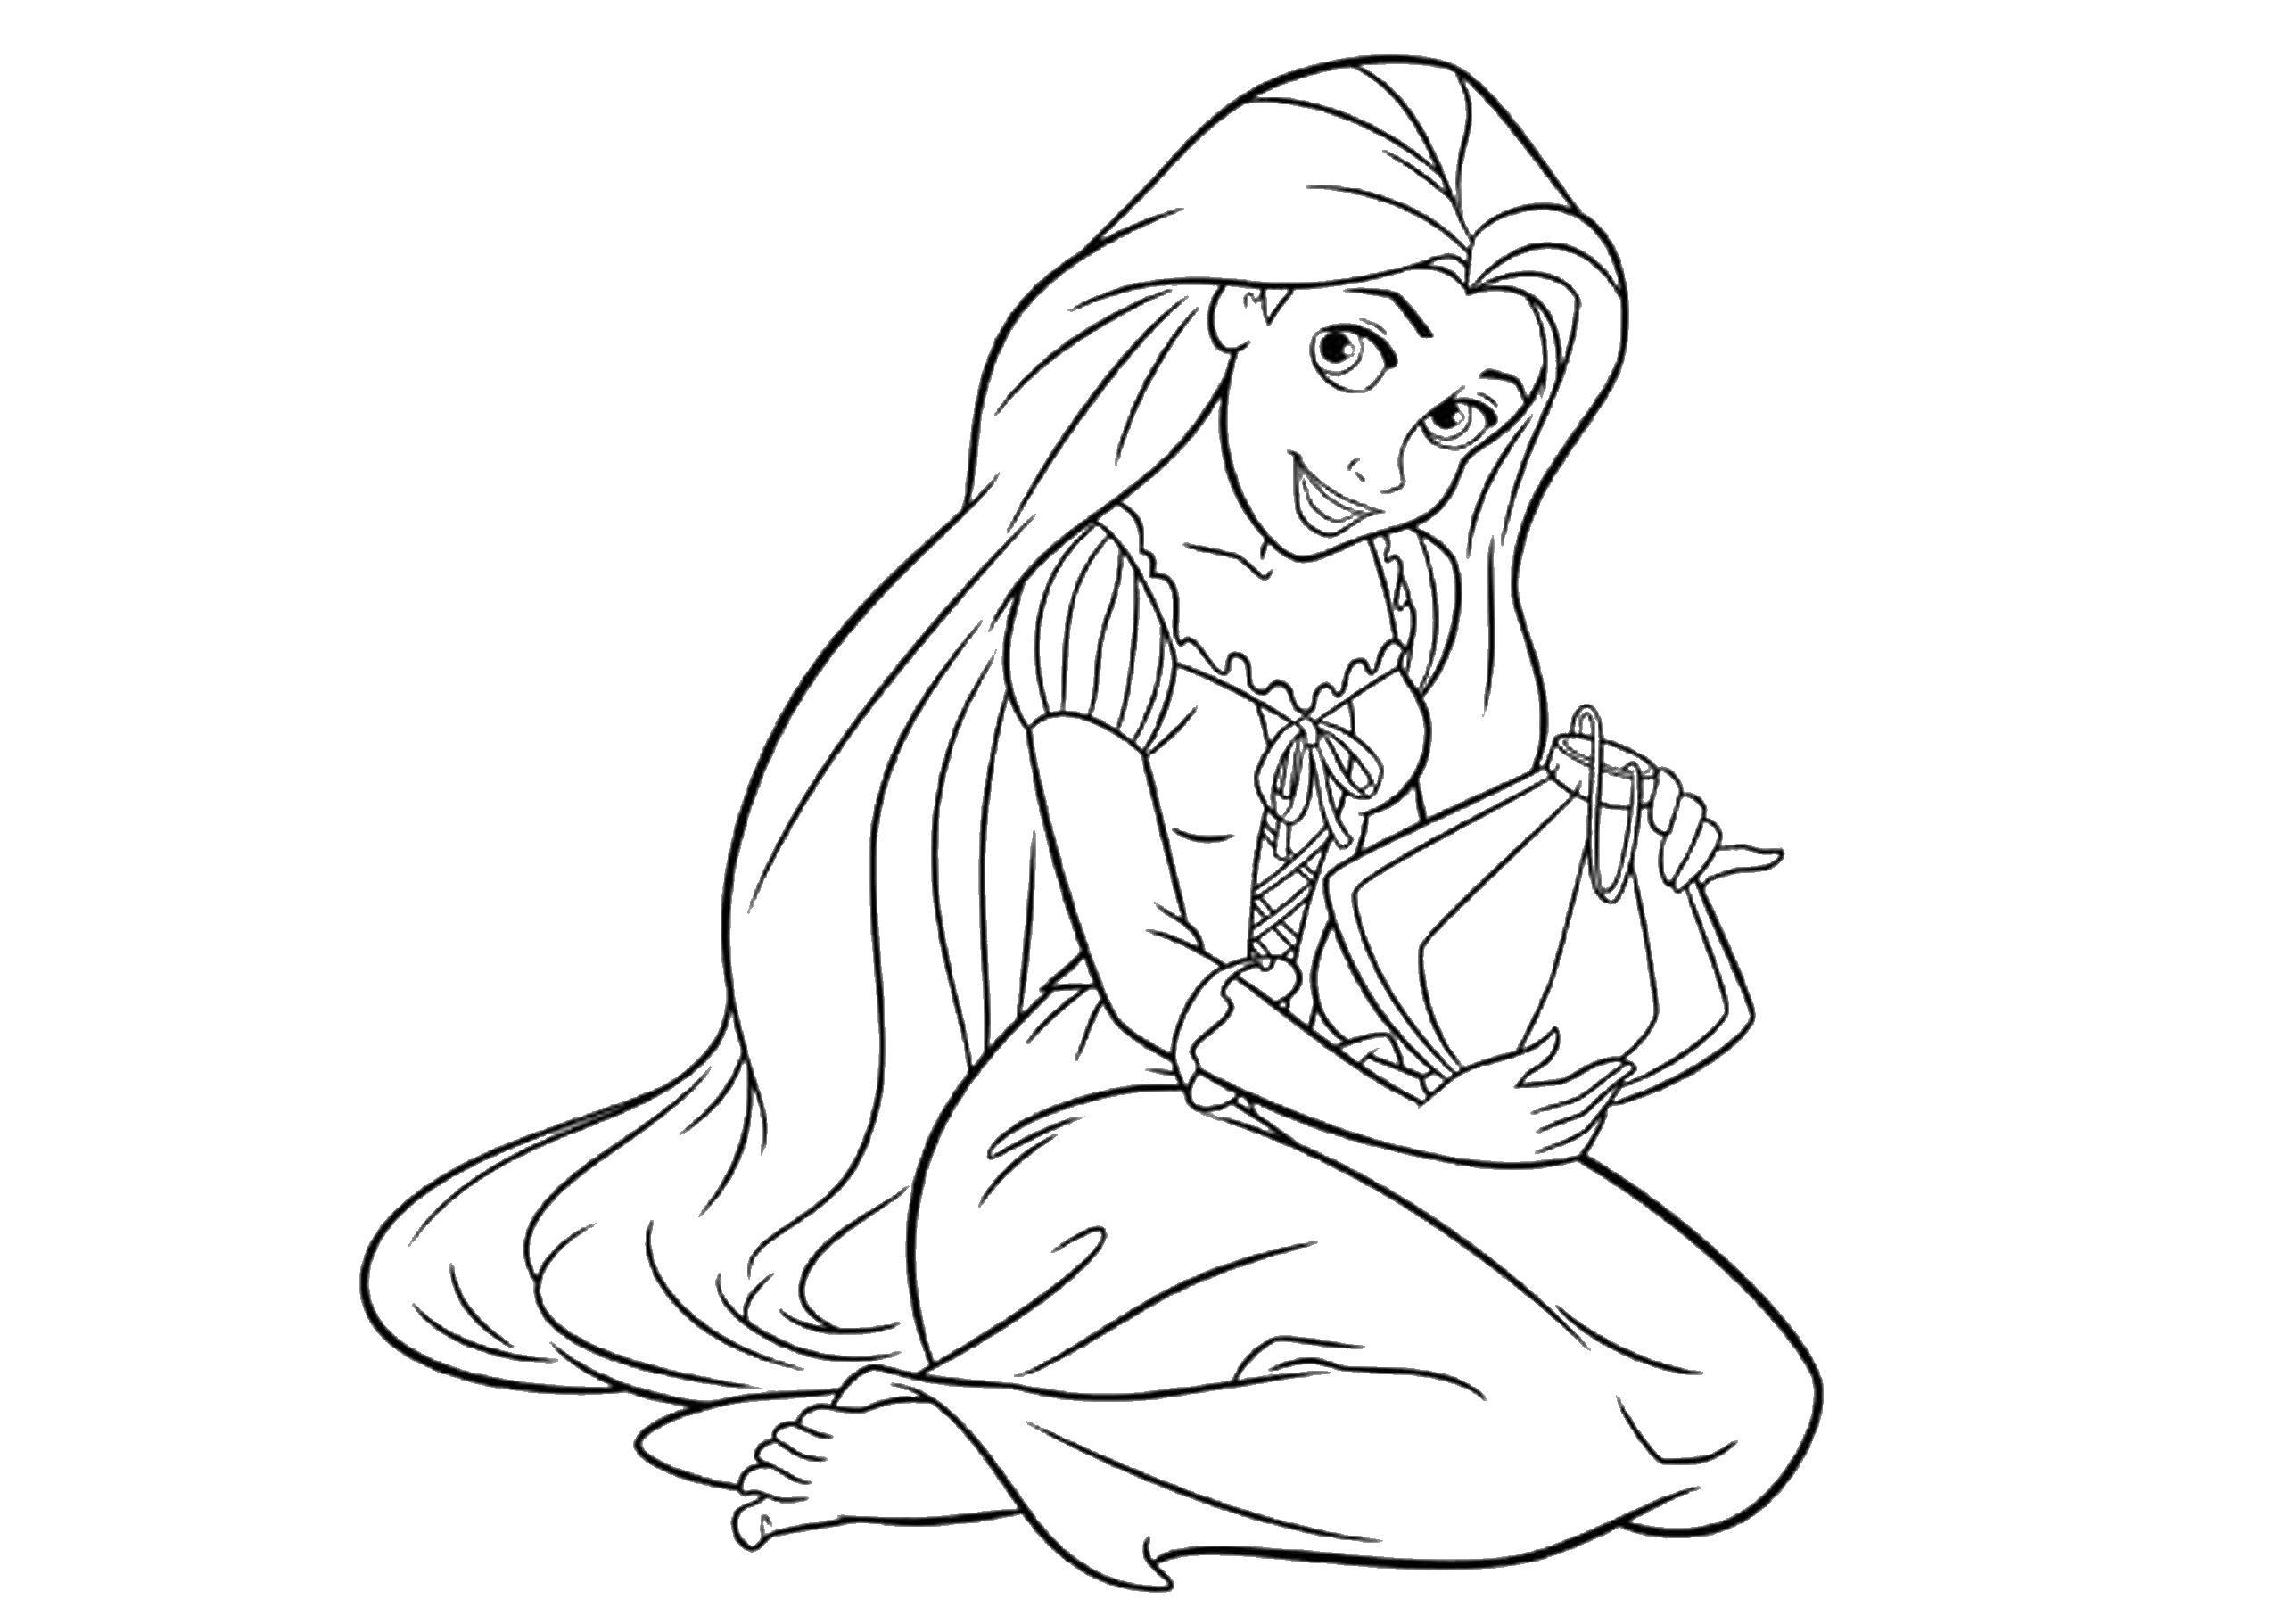 Coloring Princess Rapunzel. Category Princess. Tags:  Rapunzel , Princess, princesses.